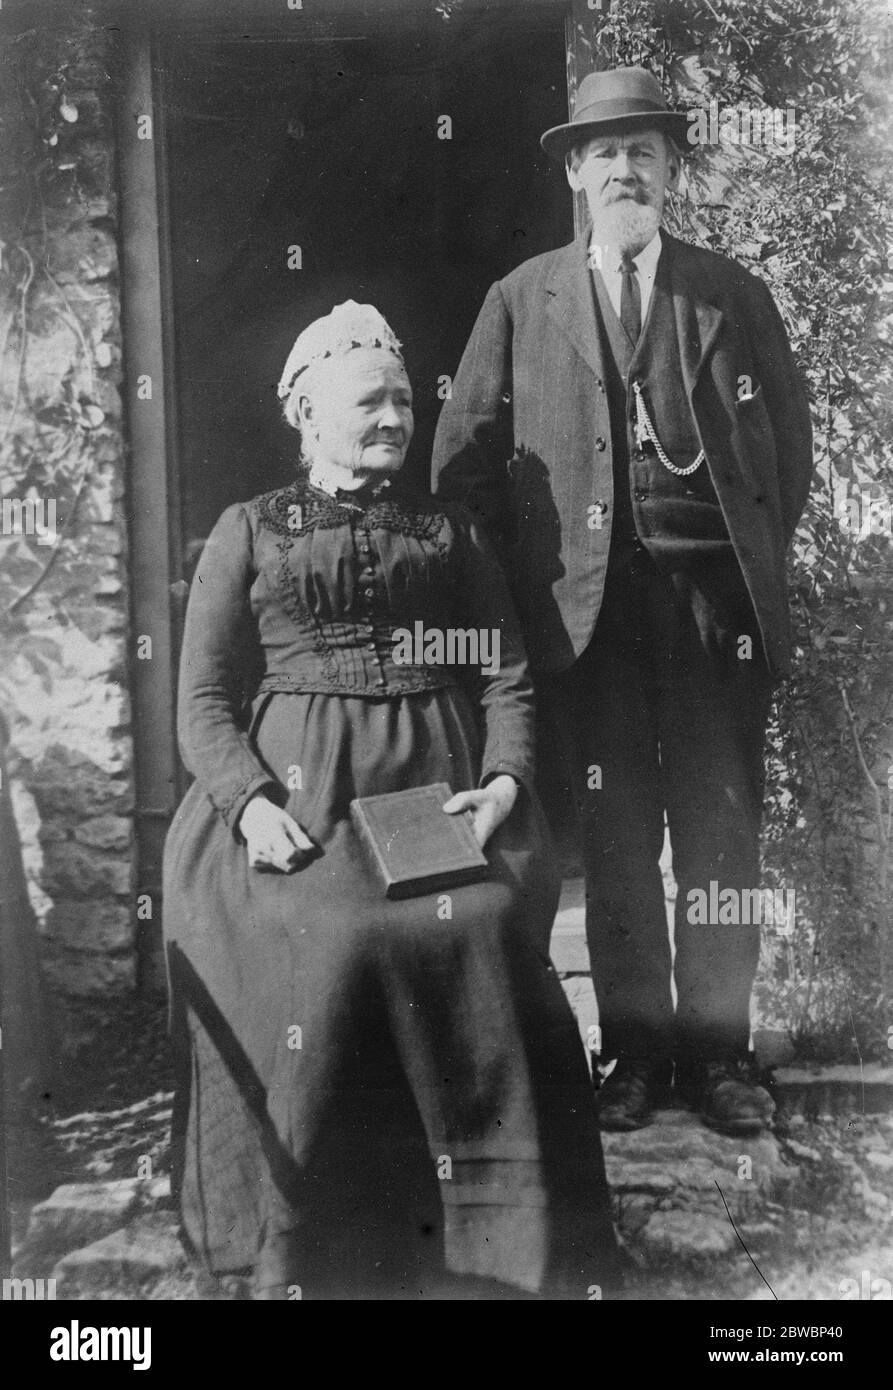 65 Jahre verheiratet Bliss Mr und Frau William Rice im Alter von 84 und 85 Jahren jeweils , die gerade den 65. Jahrestag ihrer Ehe gefeiert haben 22 September 1922 Stockfoto